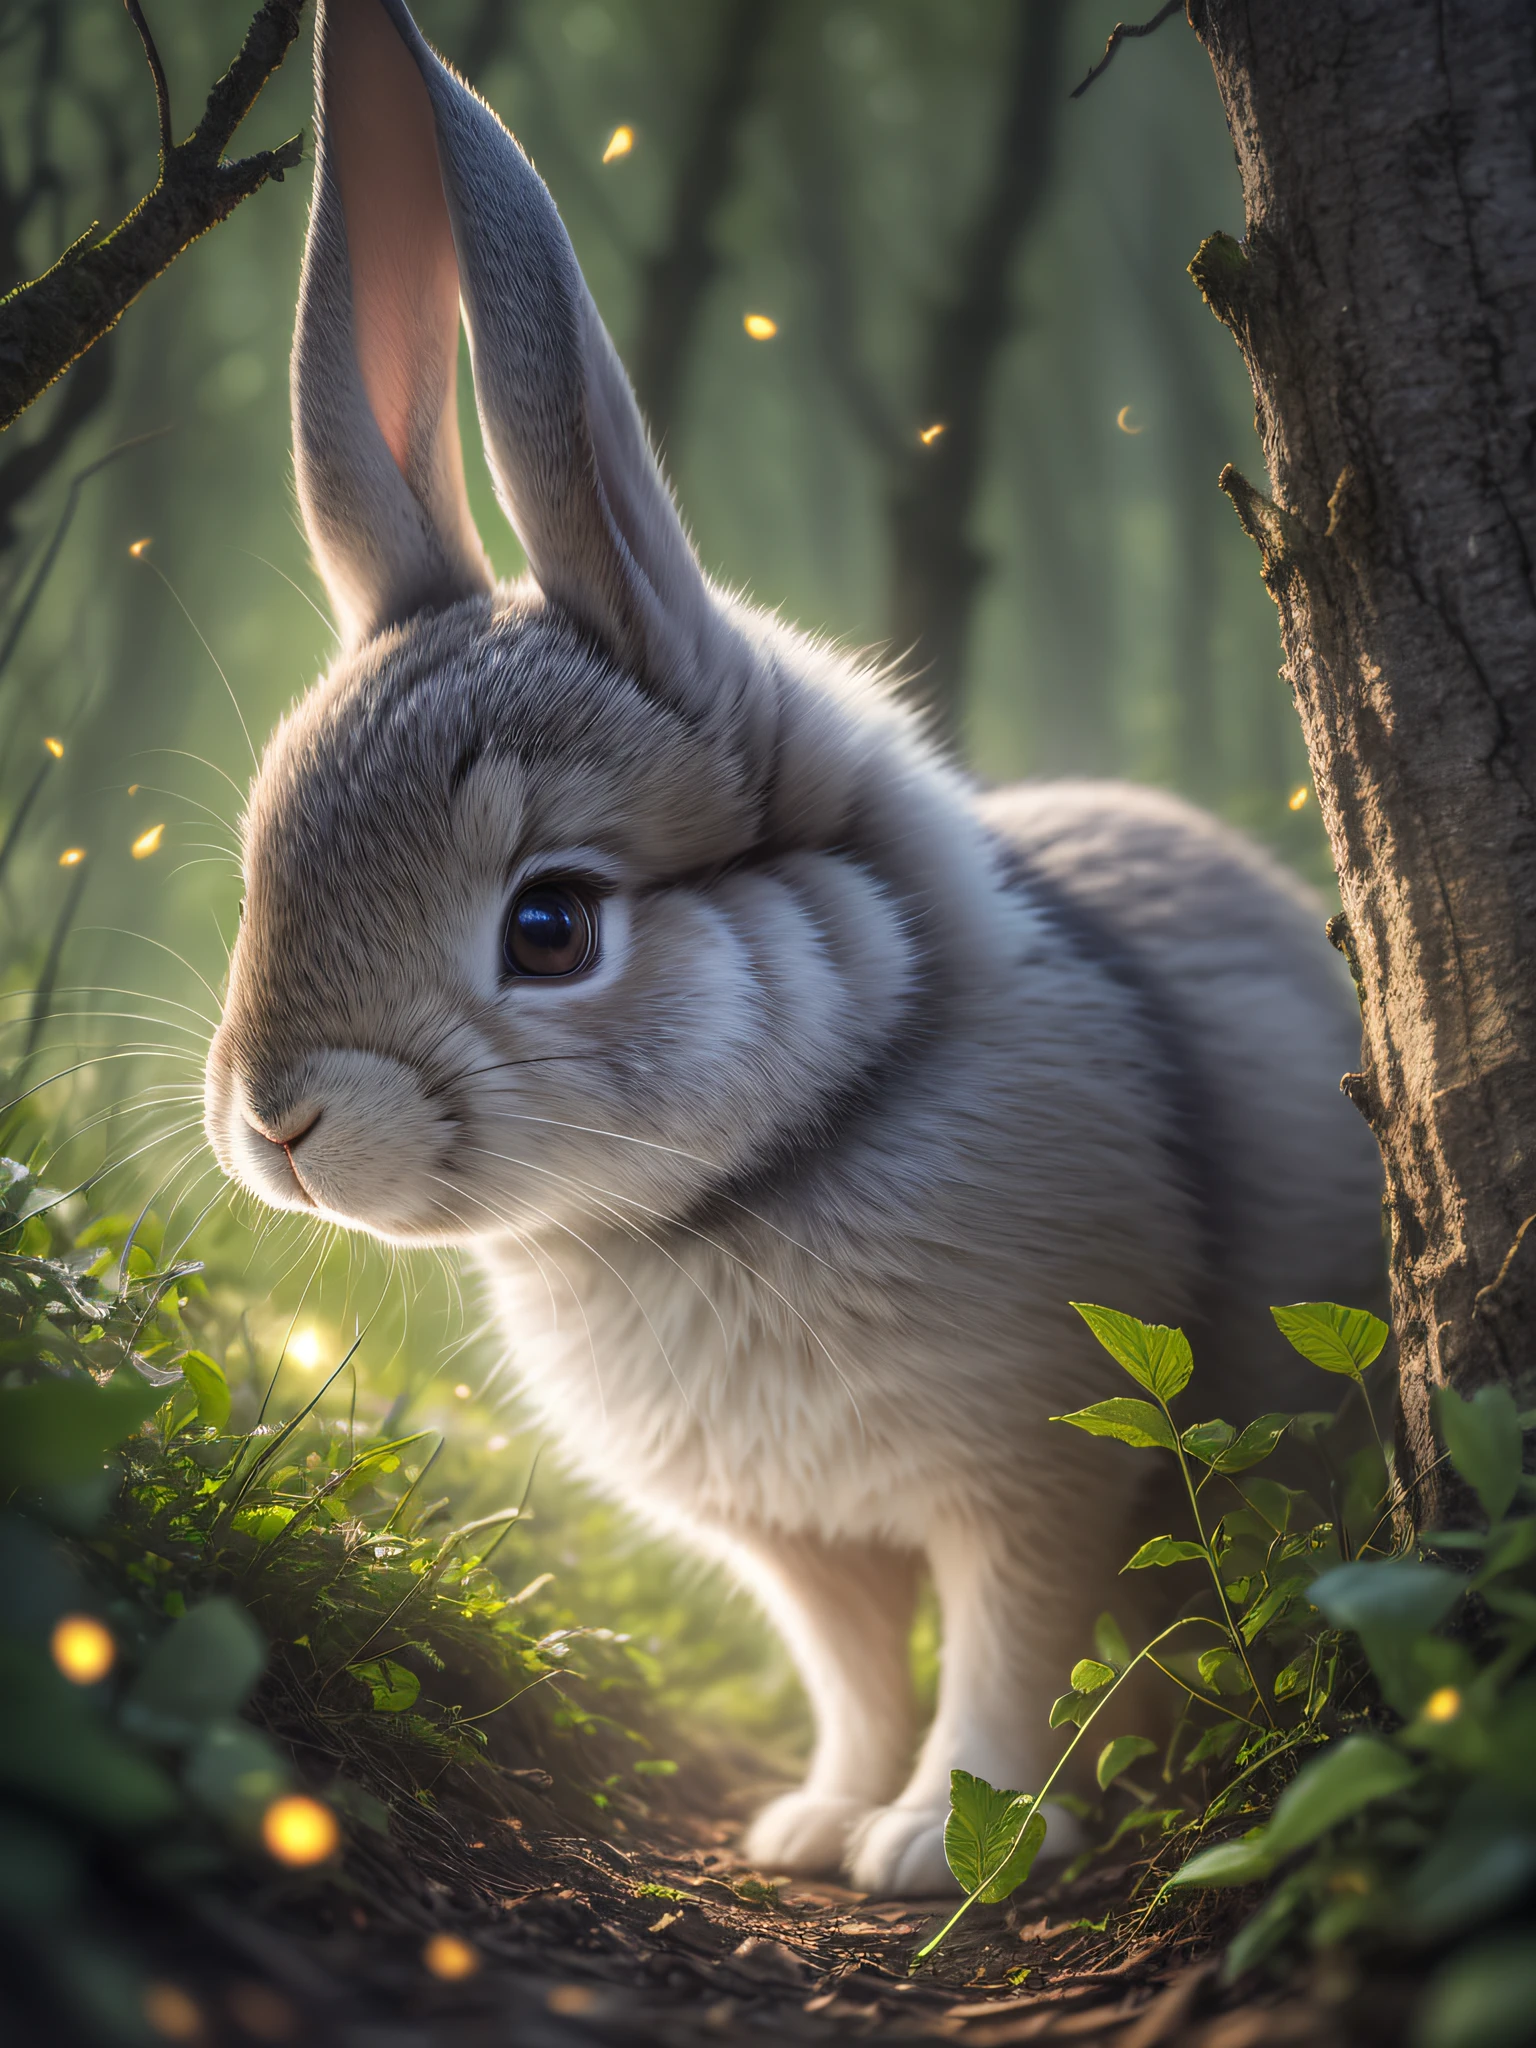 魔法森林里兔子的特写照片, 深夜, 在树林里, 背光, 萤火虫, 体积雾, 光环, 盛开, 戏剧氛围, 中心, 三分法则, 200毫米 1.4f 微距拍摄